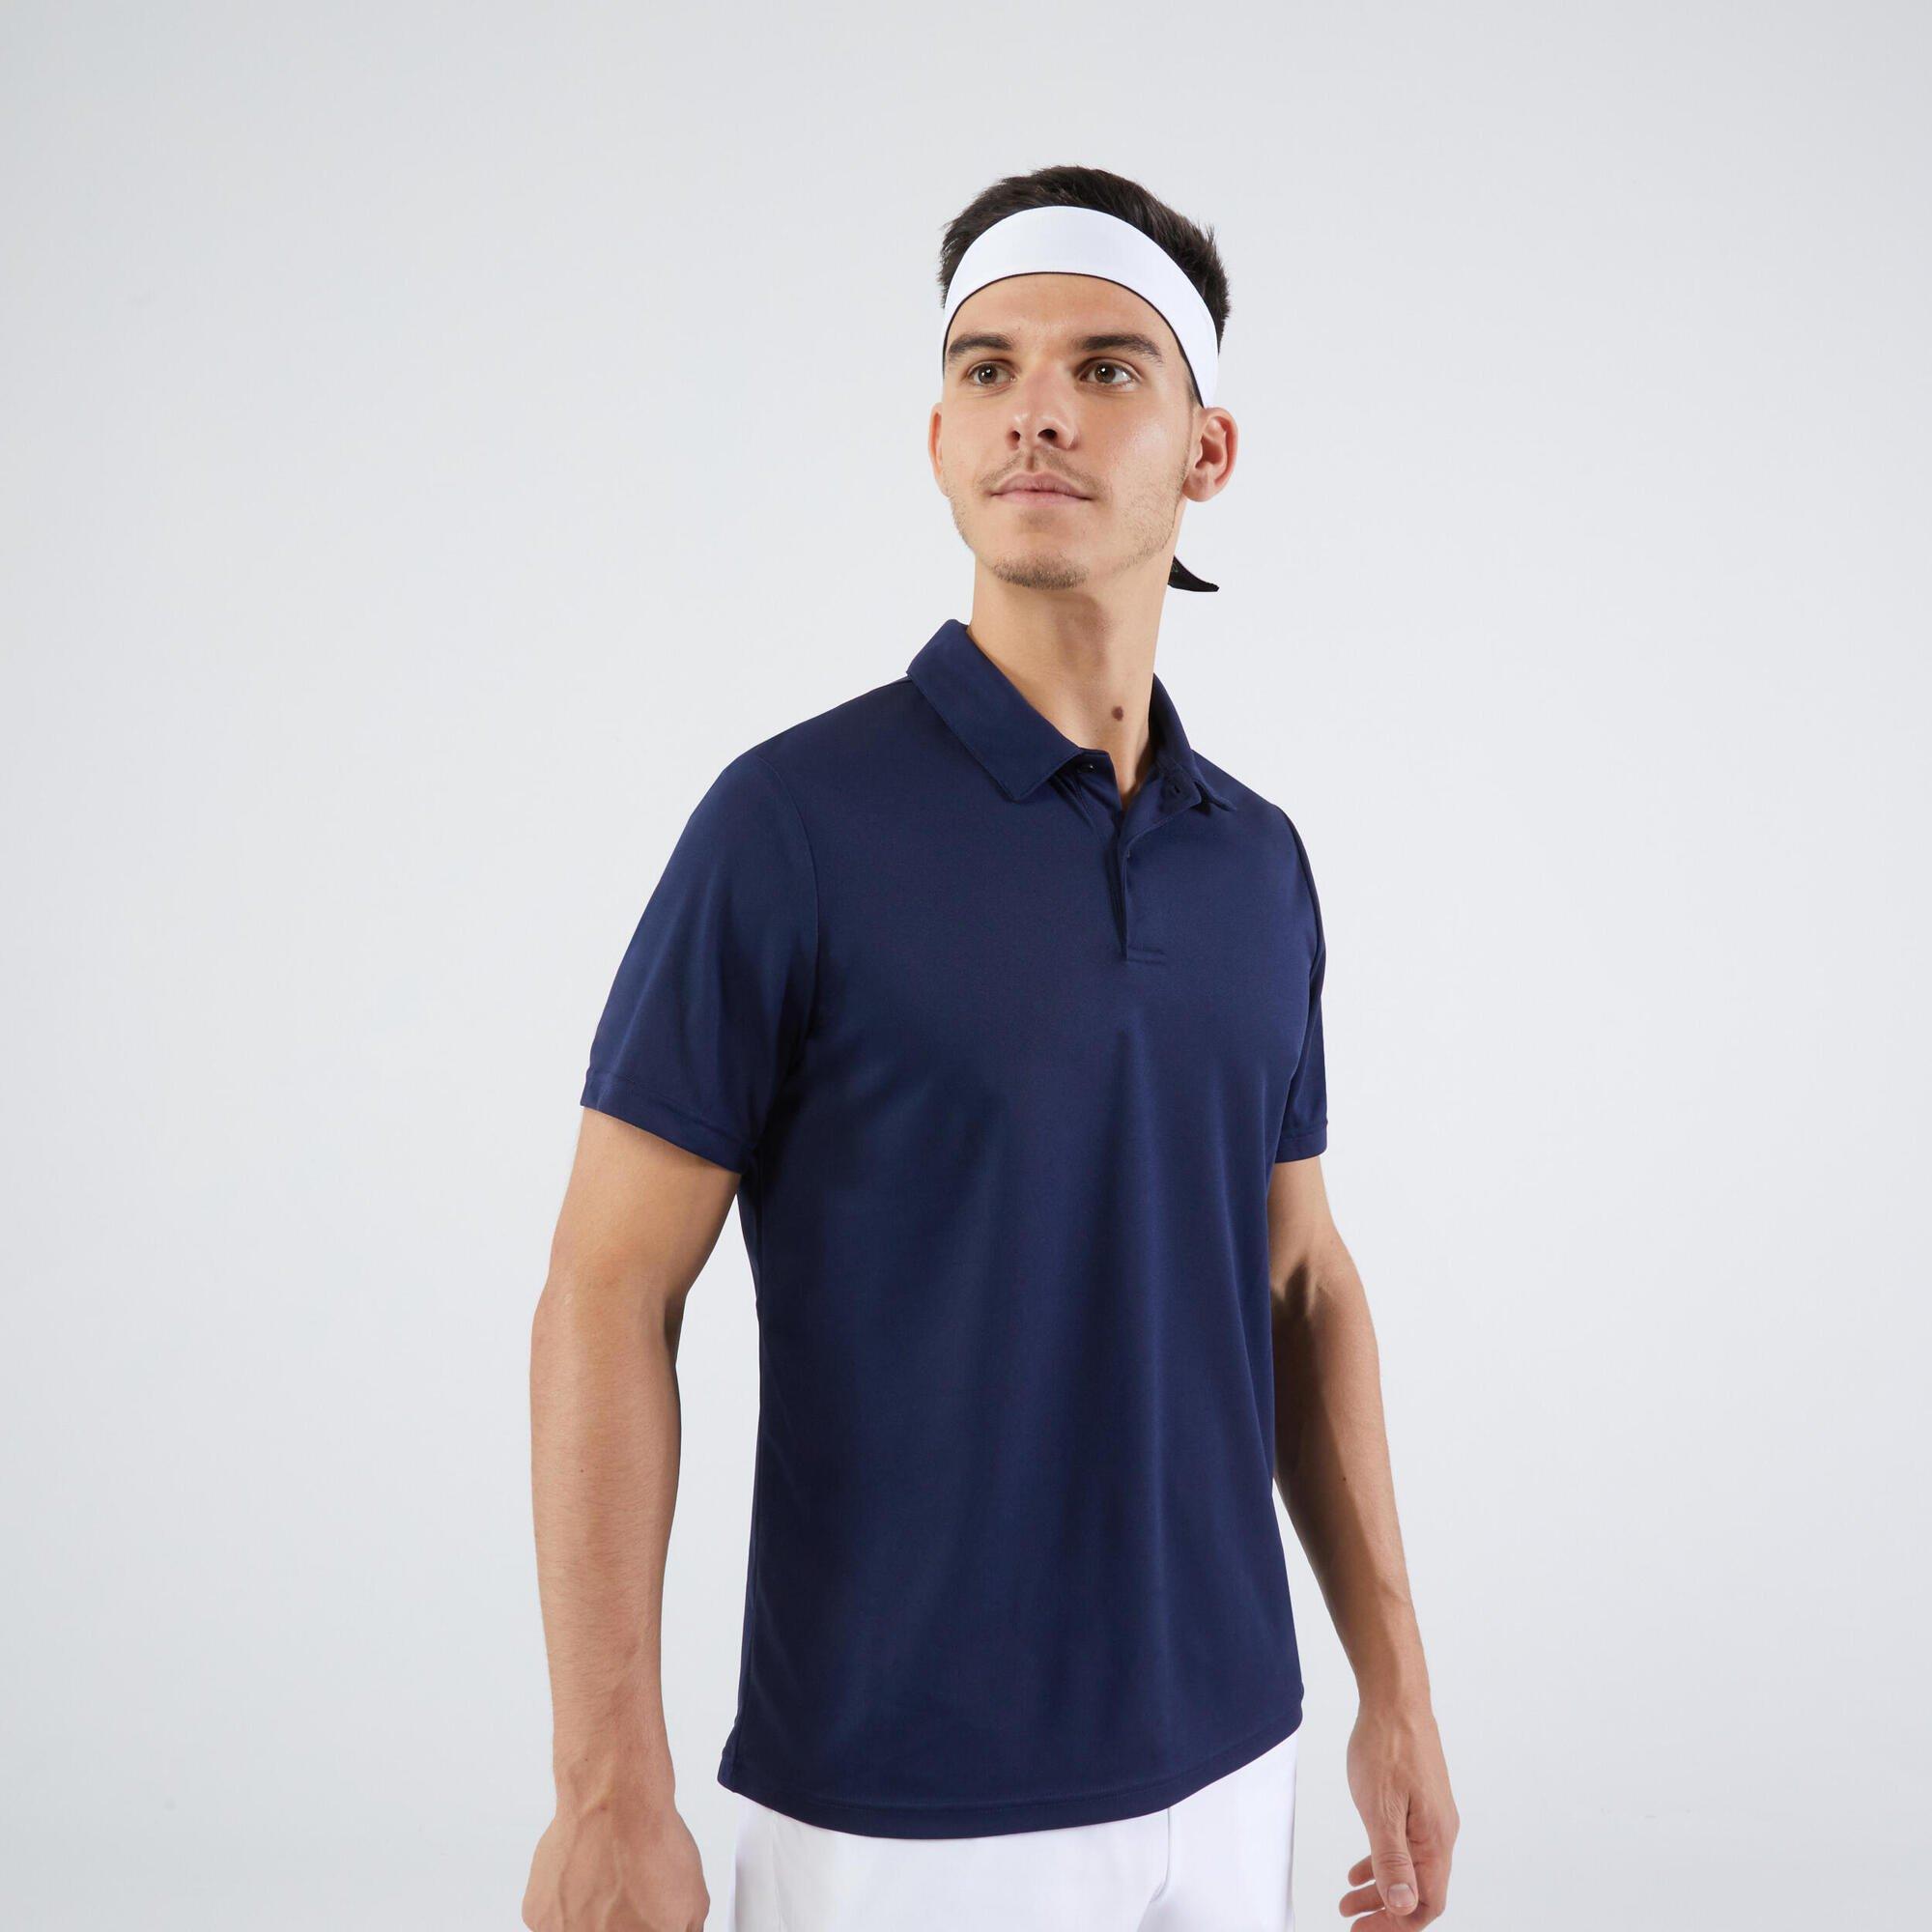 Рубашка-поло для настольного тенниса и сквоша Decathlon 700 Tennis Badminton Padel Artengo, темно-синий printio рубашка поло с полной запечаткой likee